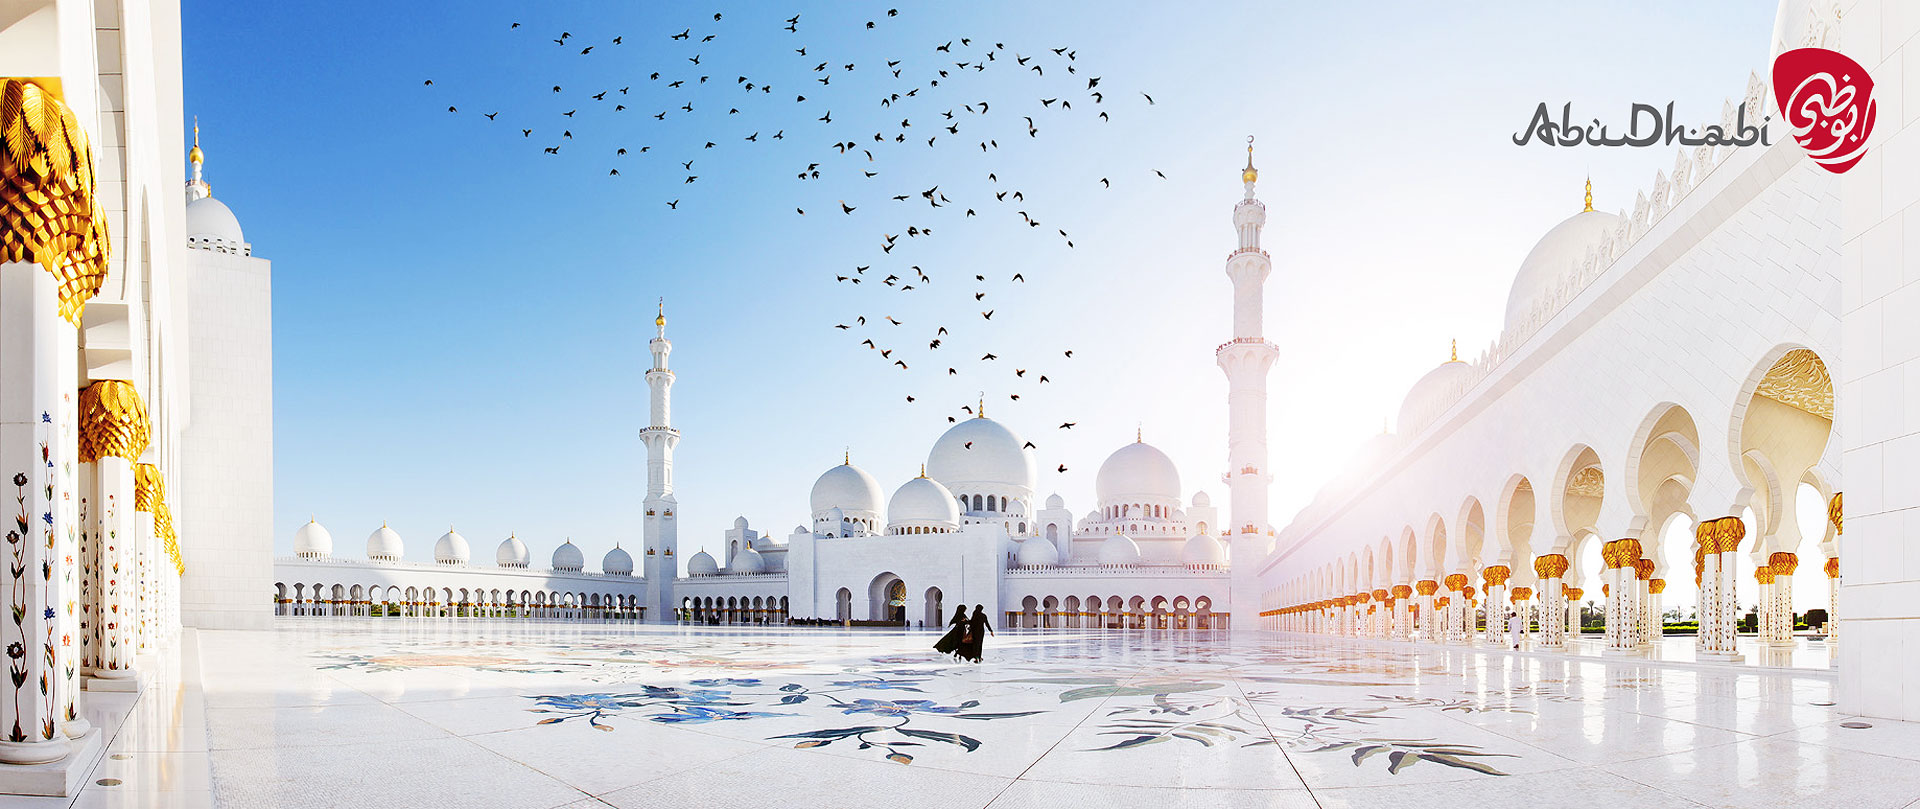 Werbung | Sheikh Zayed Grand Mosque | Rainer Waelder Fotografie | Ihr Werbefotograf in Freiburg und Basel